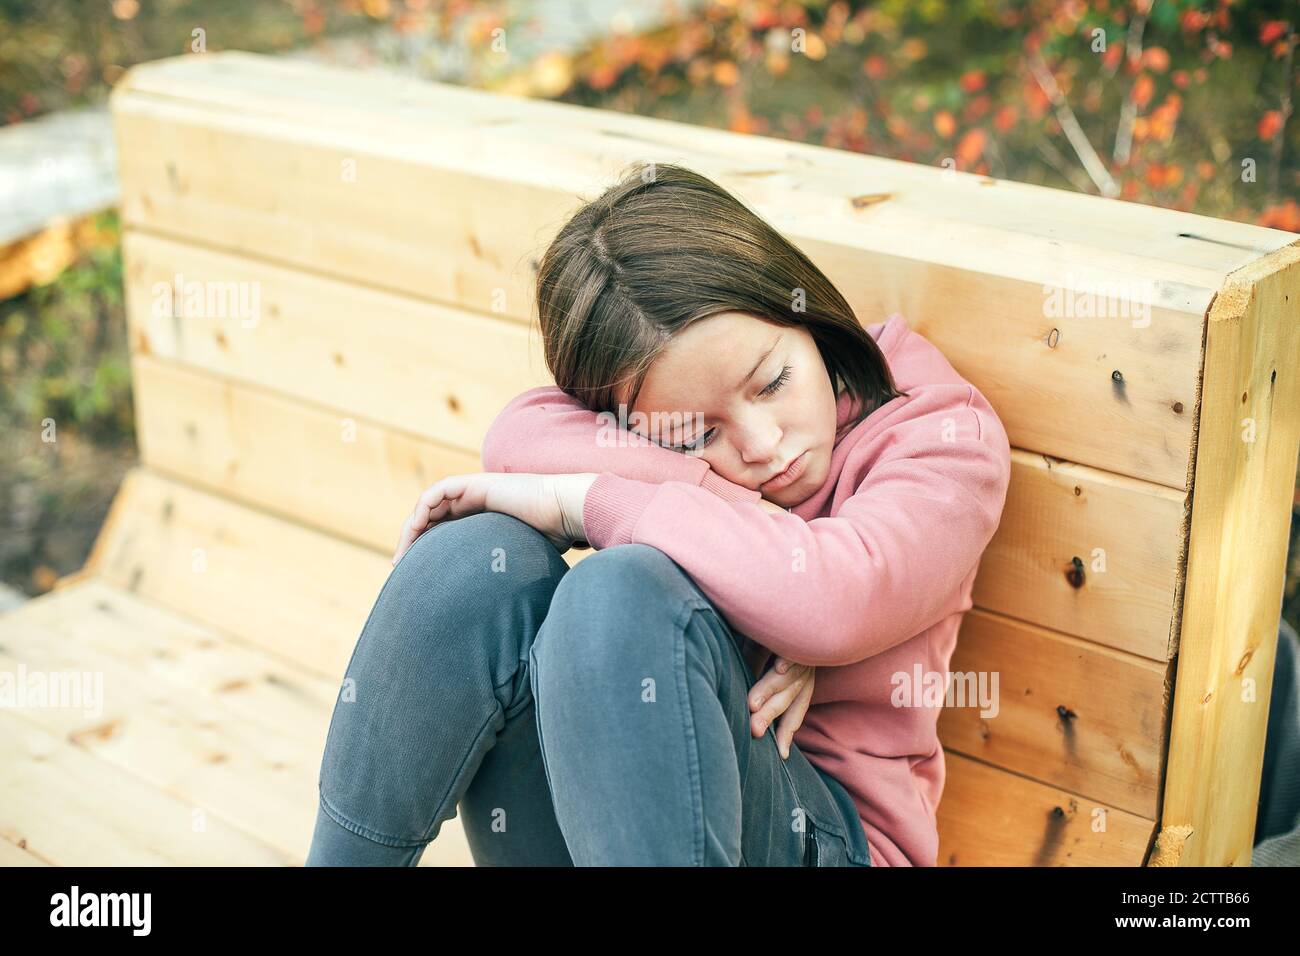 Portrait d'une fille triste et ennuyeuse de 7-8 ans dans un parc de la ville Banque D'Images